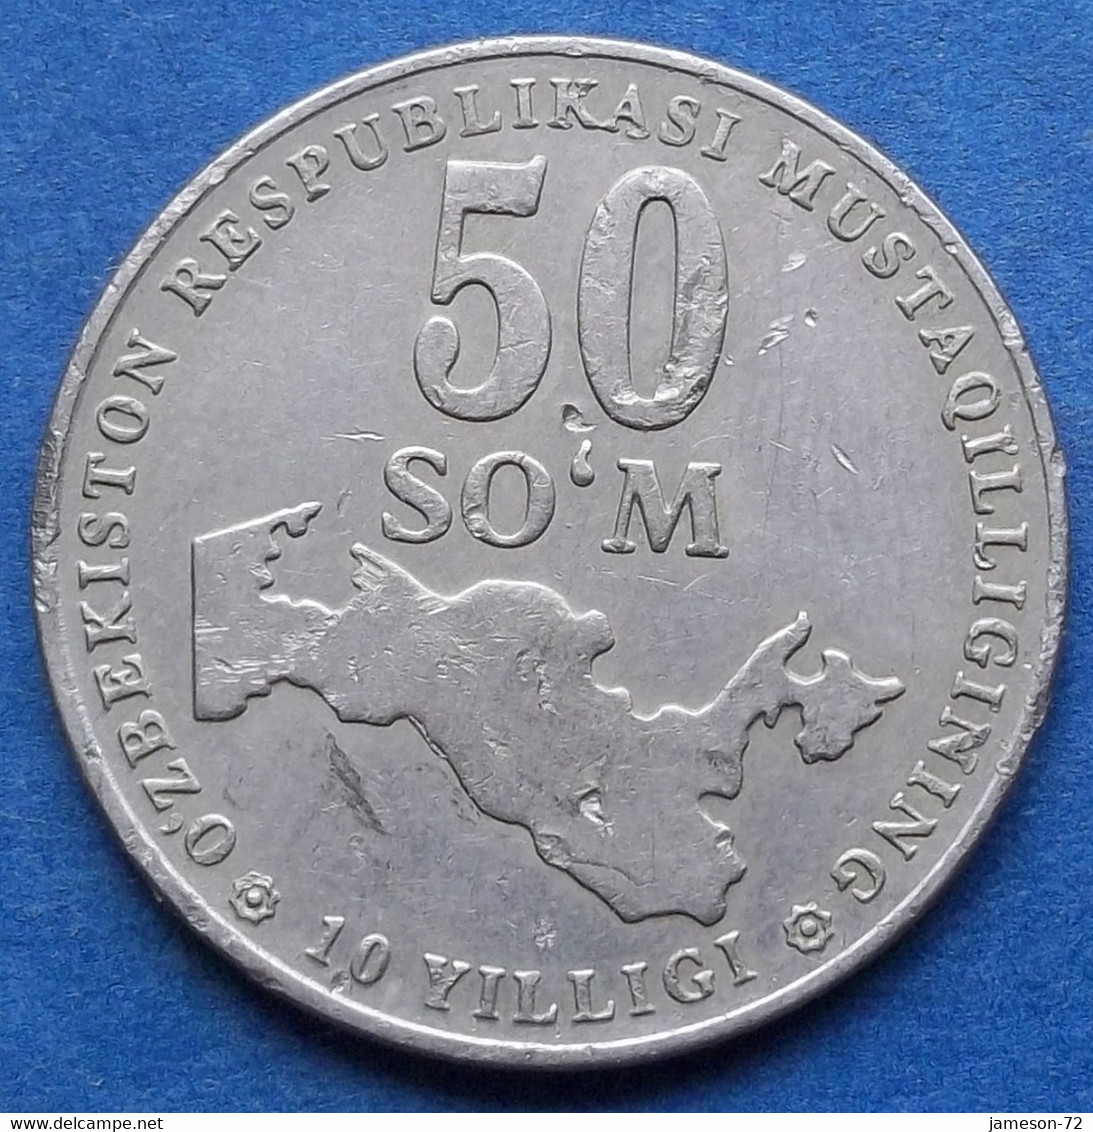 UZBEKISTAN - 50 So'm 2001 KM# 15 Independent Republic (1991) - Edelweiss Coins - Uzbenisktán